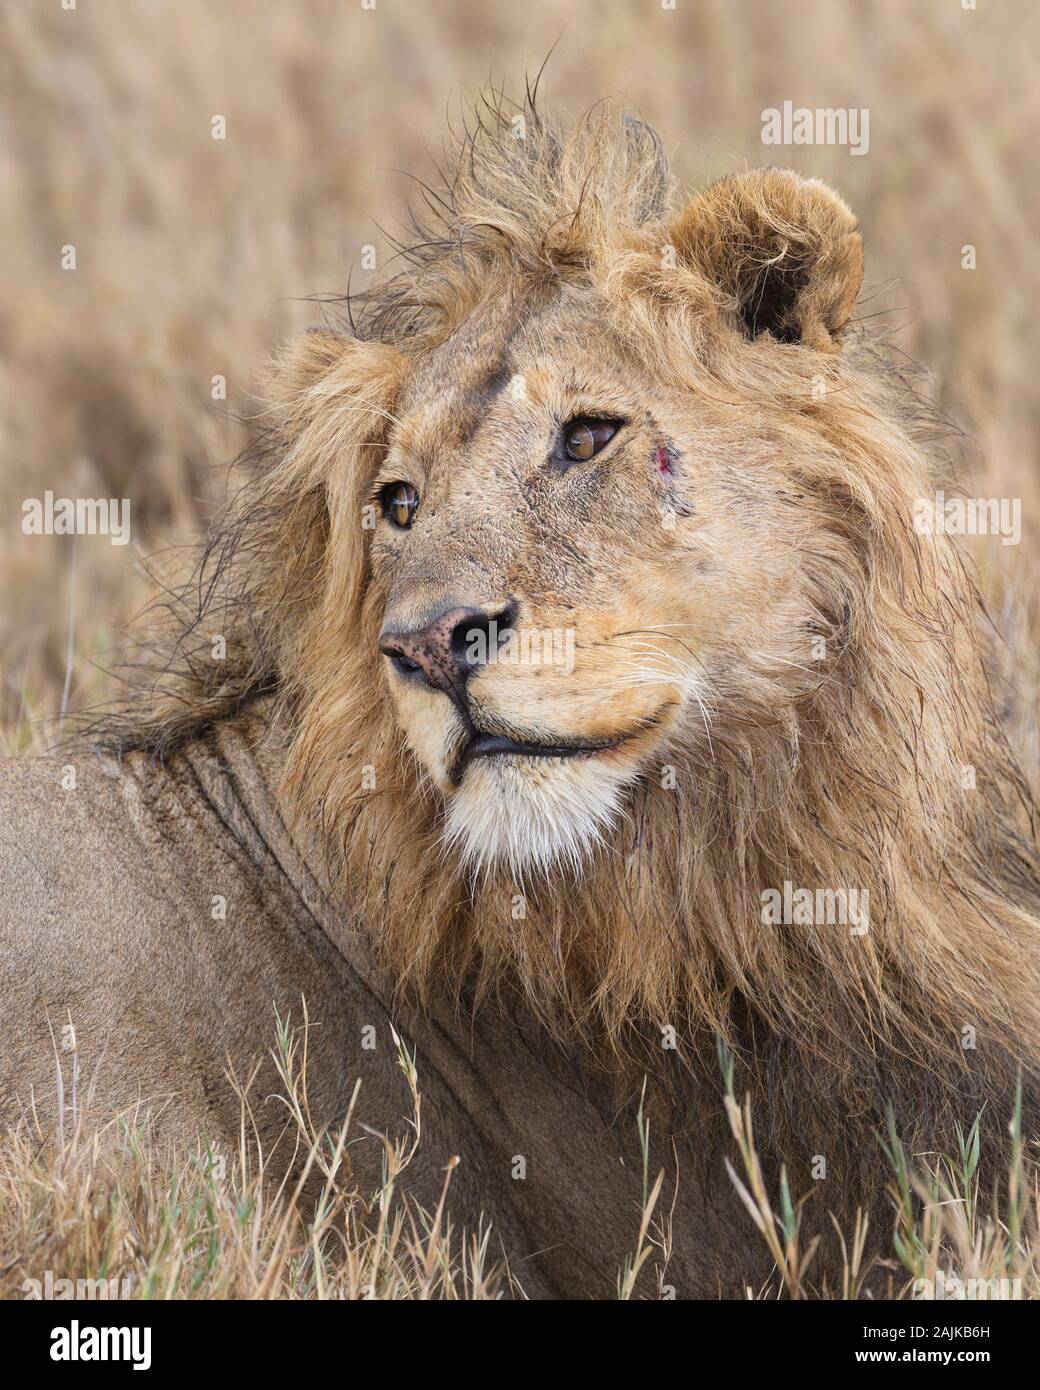 Portrait d'un homme lion à plus de son épaule avec une cicatrice sur son visage Banque D'Images